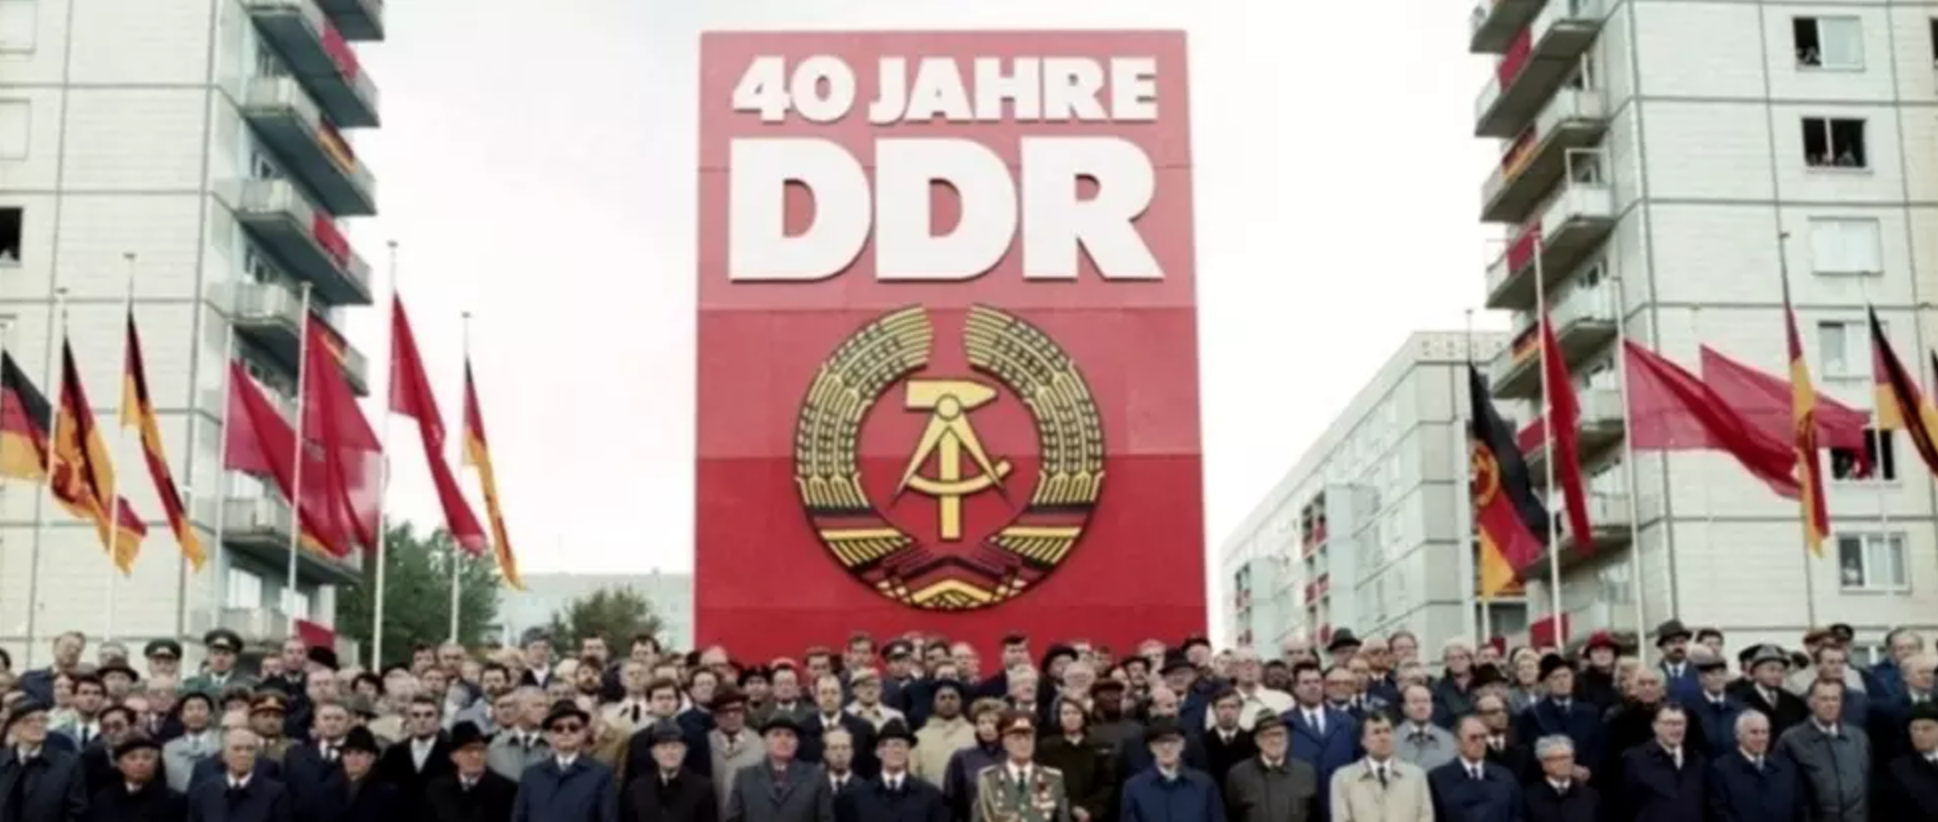 DDR. Foto: public domain